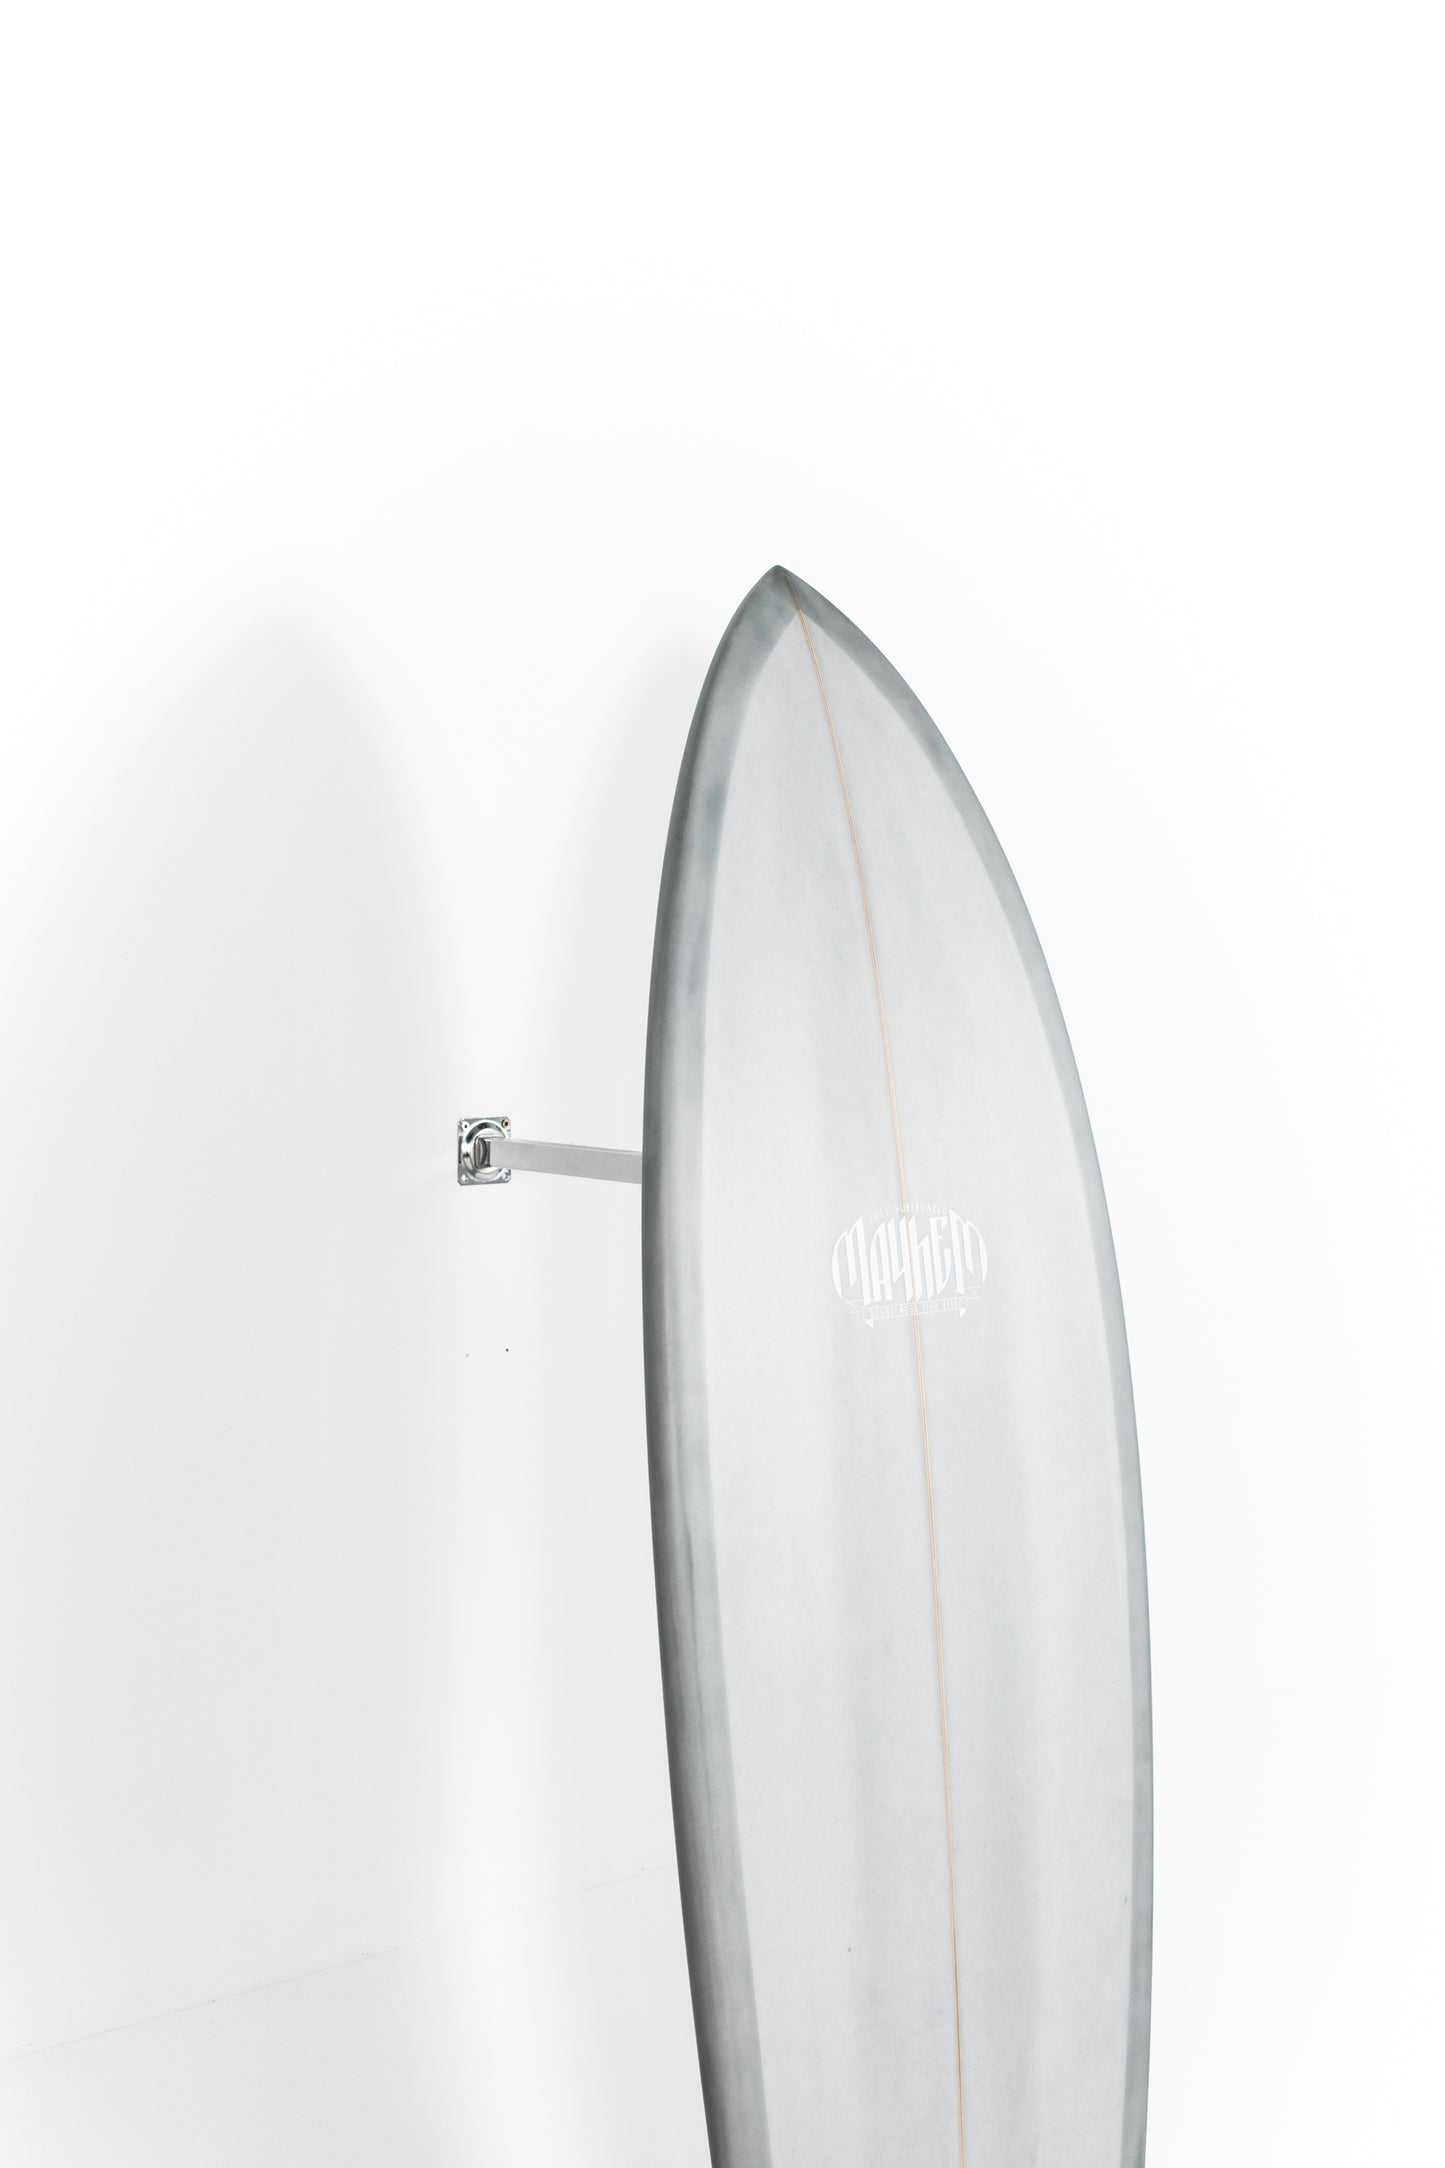 大特価!! RAGE surfboards 5'7 flowmasterフィン・リーシュ付 